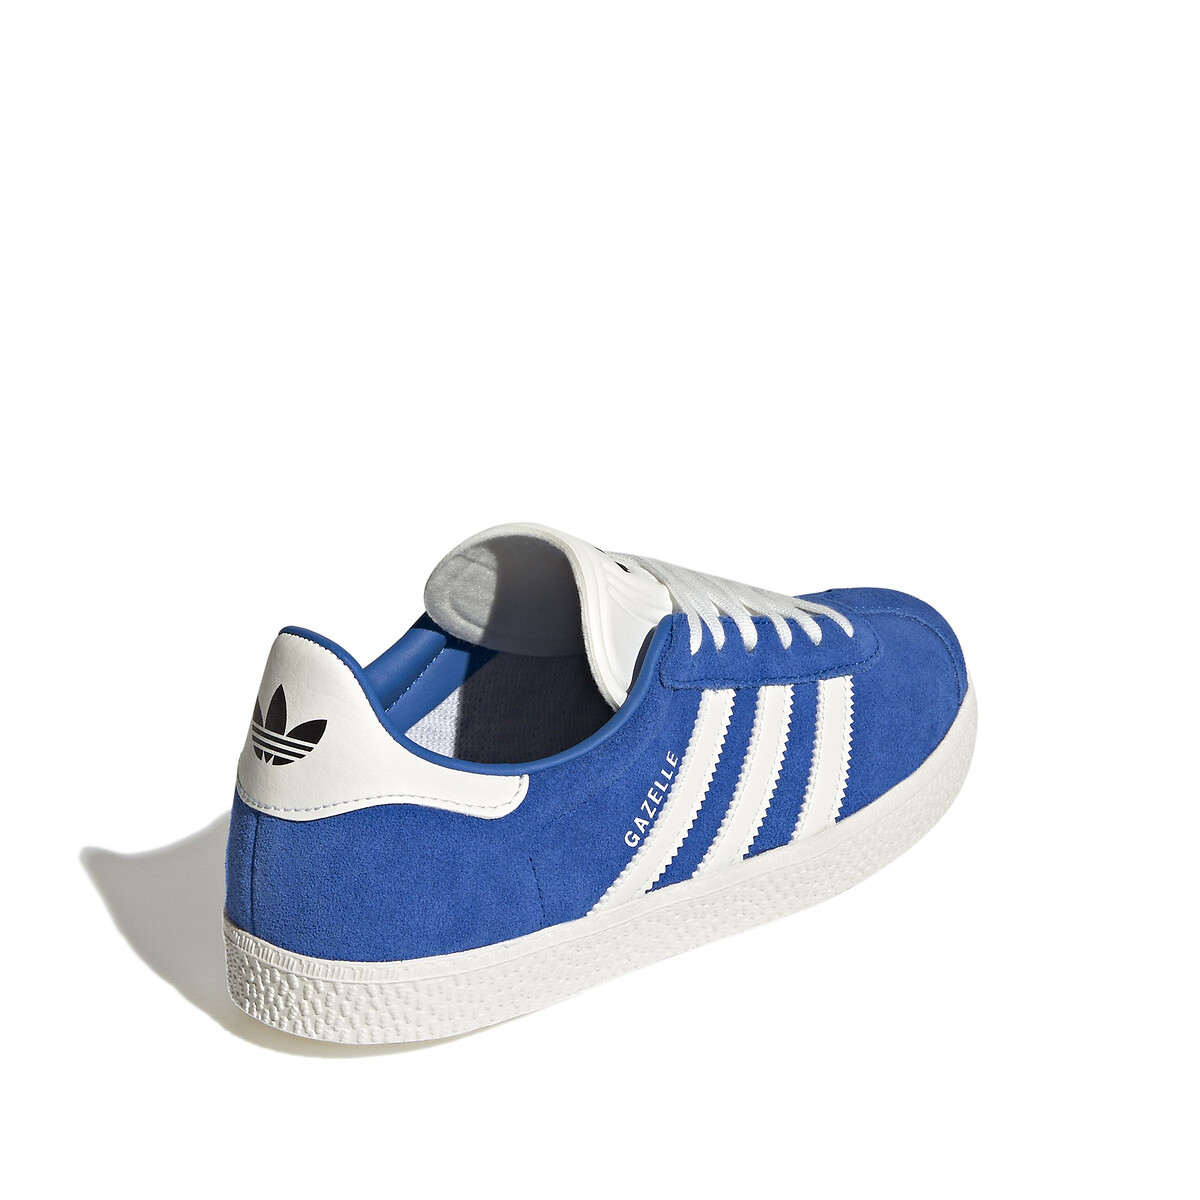 Zapatillas de cordones piel gazelle azul Adidas | La